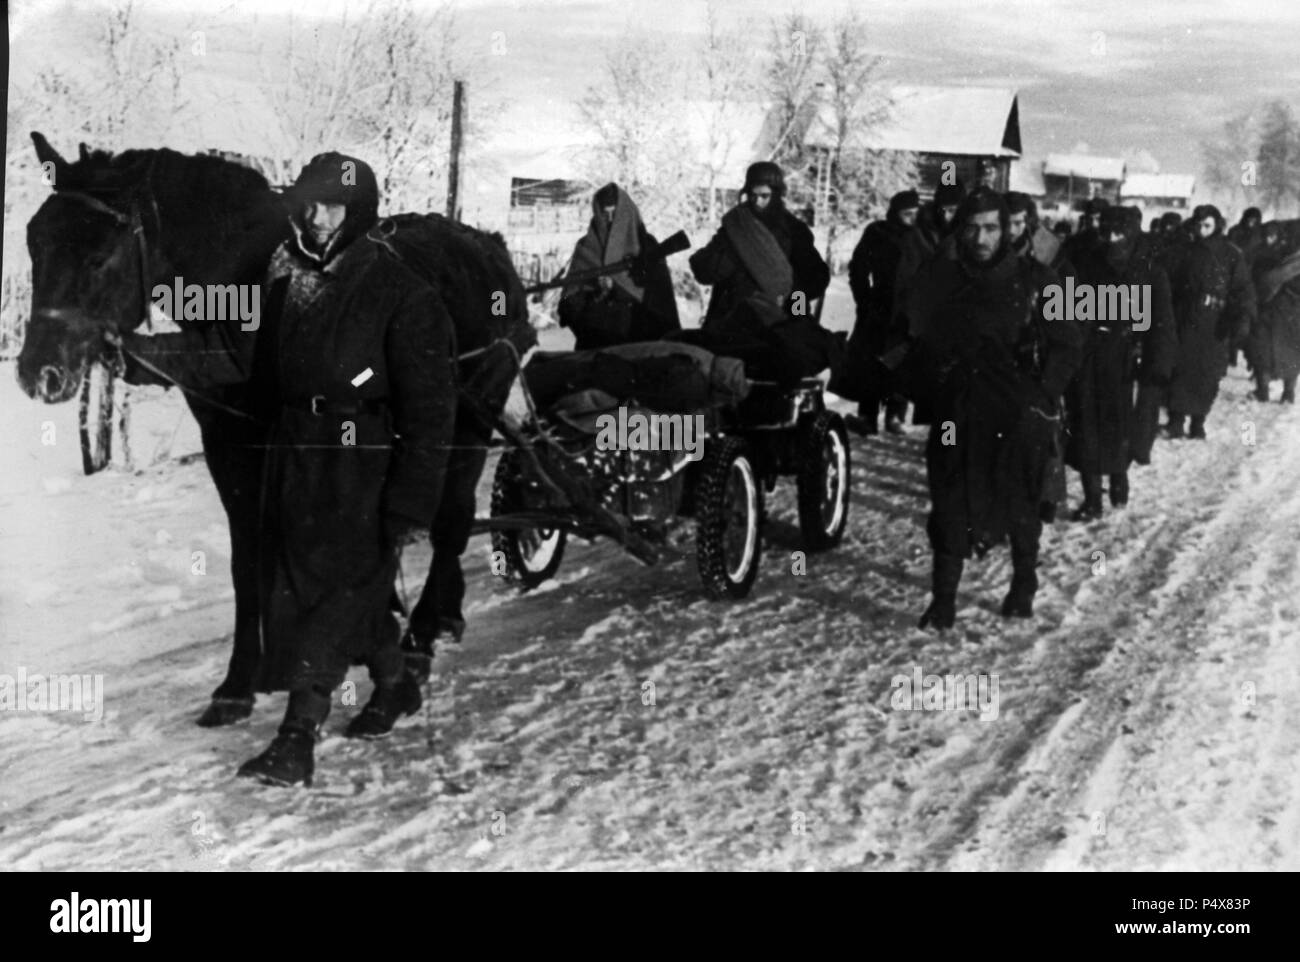 Columna de voluntarios españoles de la 'División Azul' marchando hacia el frente ruso. 23 de enero de 1942. Stock Photo